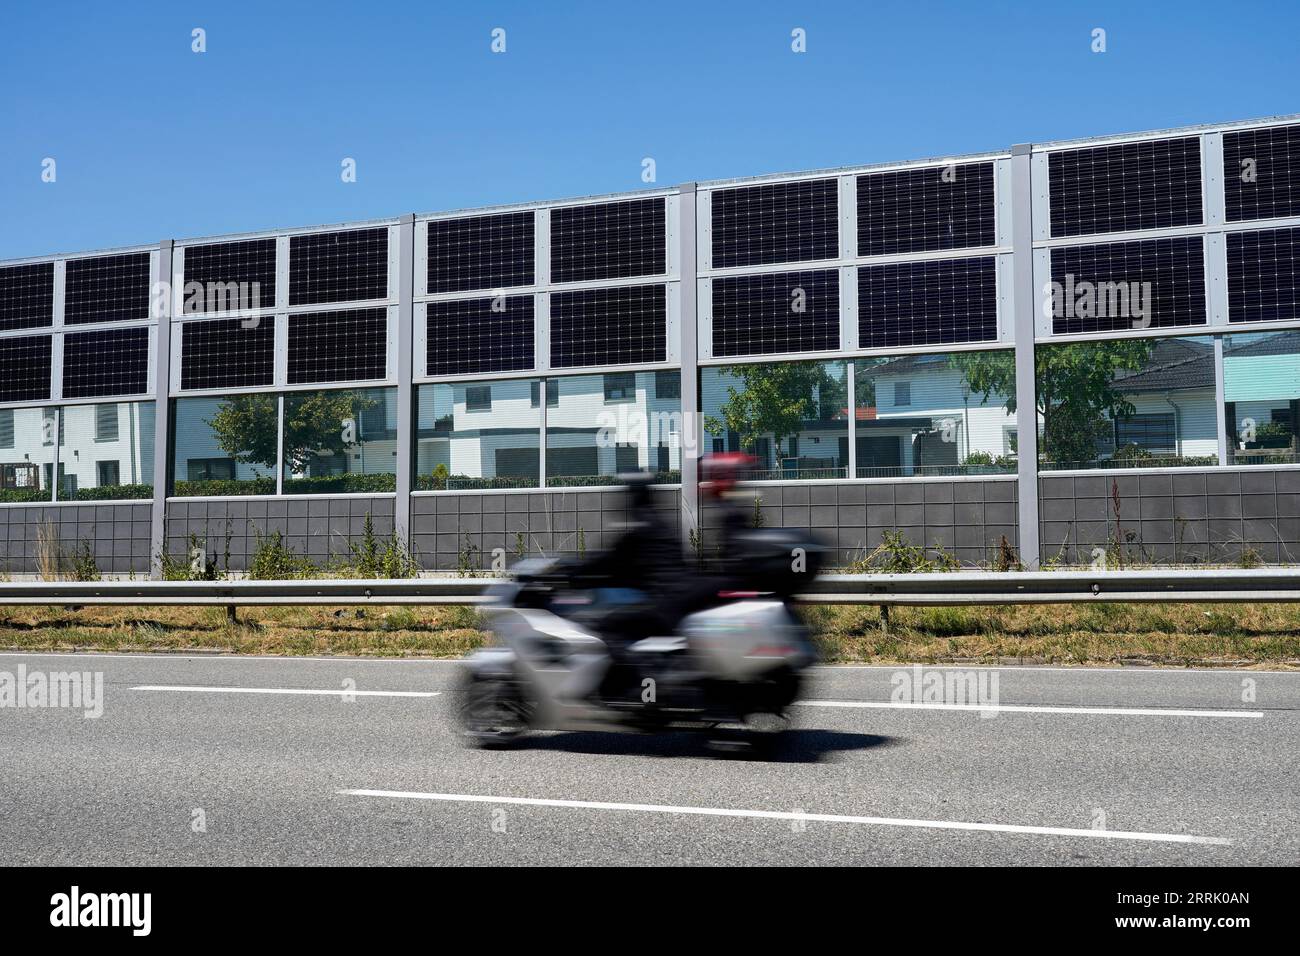 Deutschland, Bayern, Oberbayern, Neuötting, Wohnsiedlung, davor Schallmauer mit Photovoltaik, Straße, vorbeifahrendes Motorrad Stockfoto